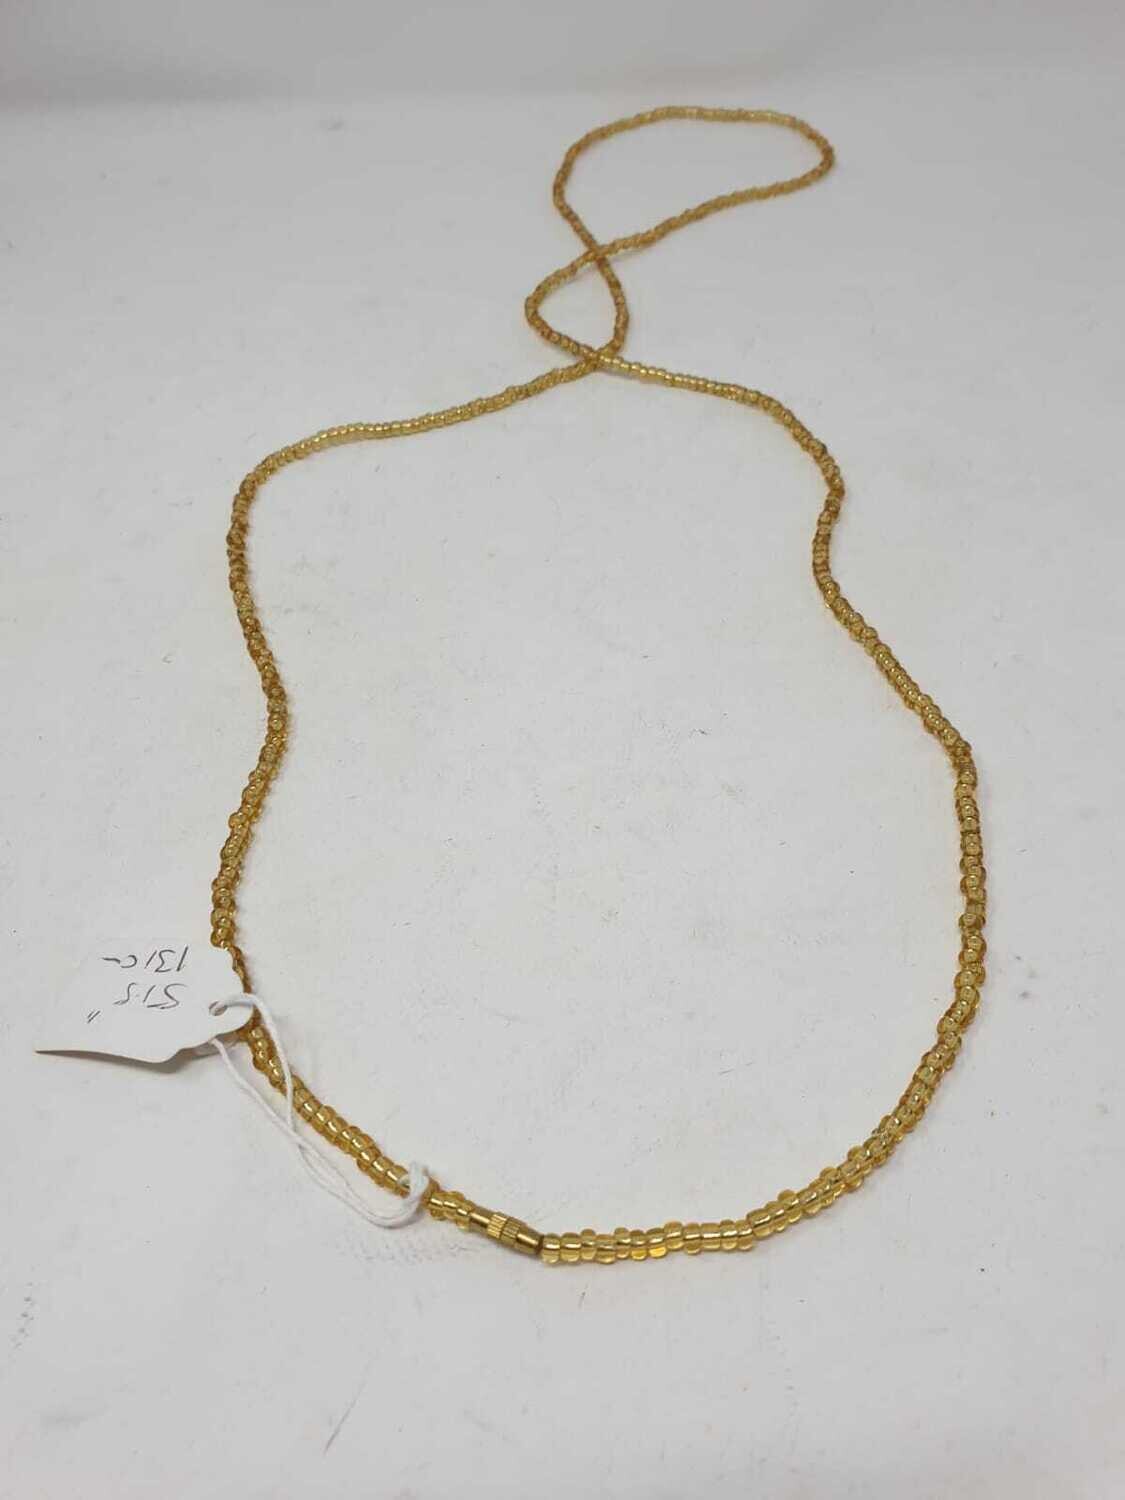 Handbeaded African Waist Beads - Size 51"/ 129.5cm